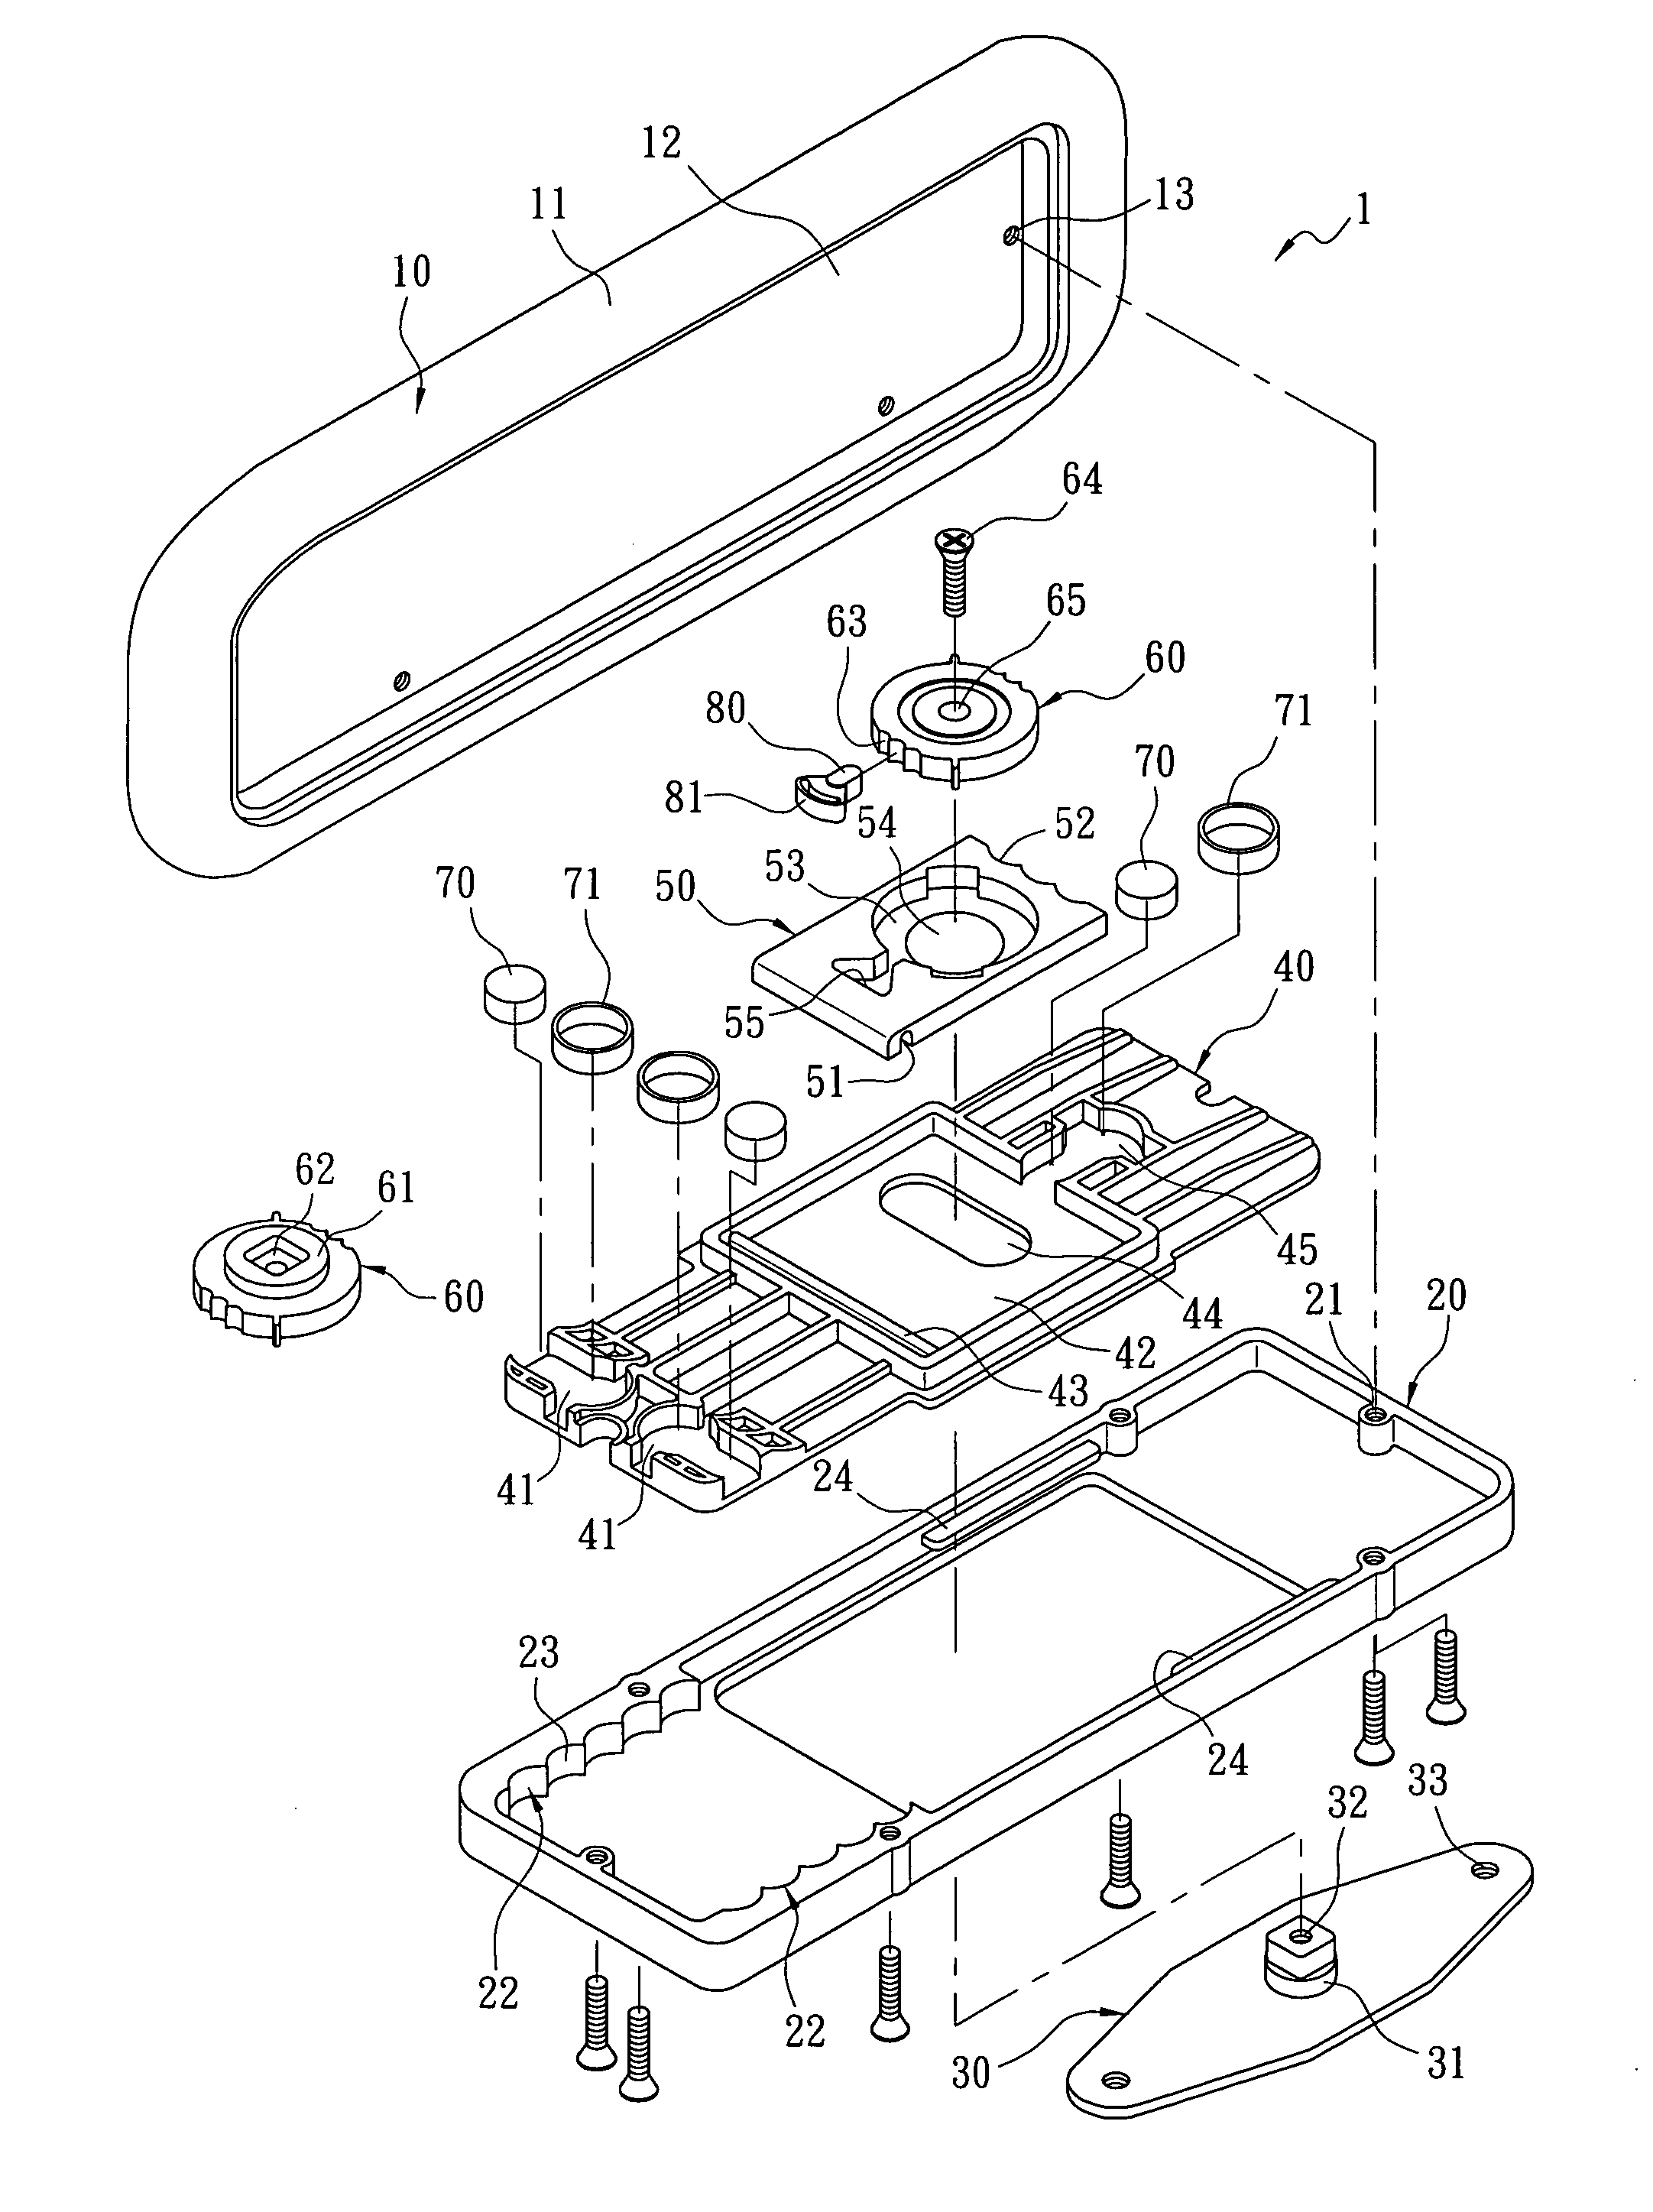 Adjustment mechanism for armrest